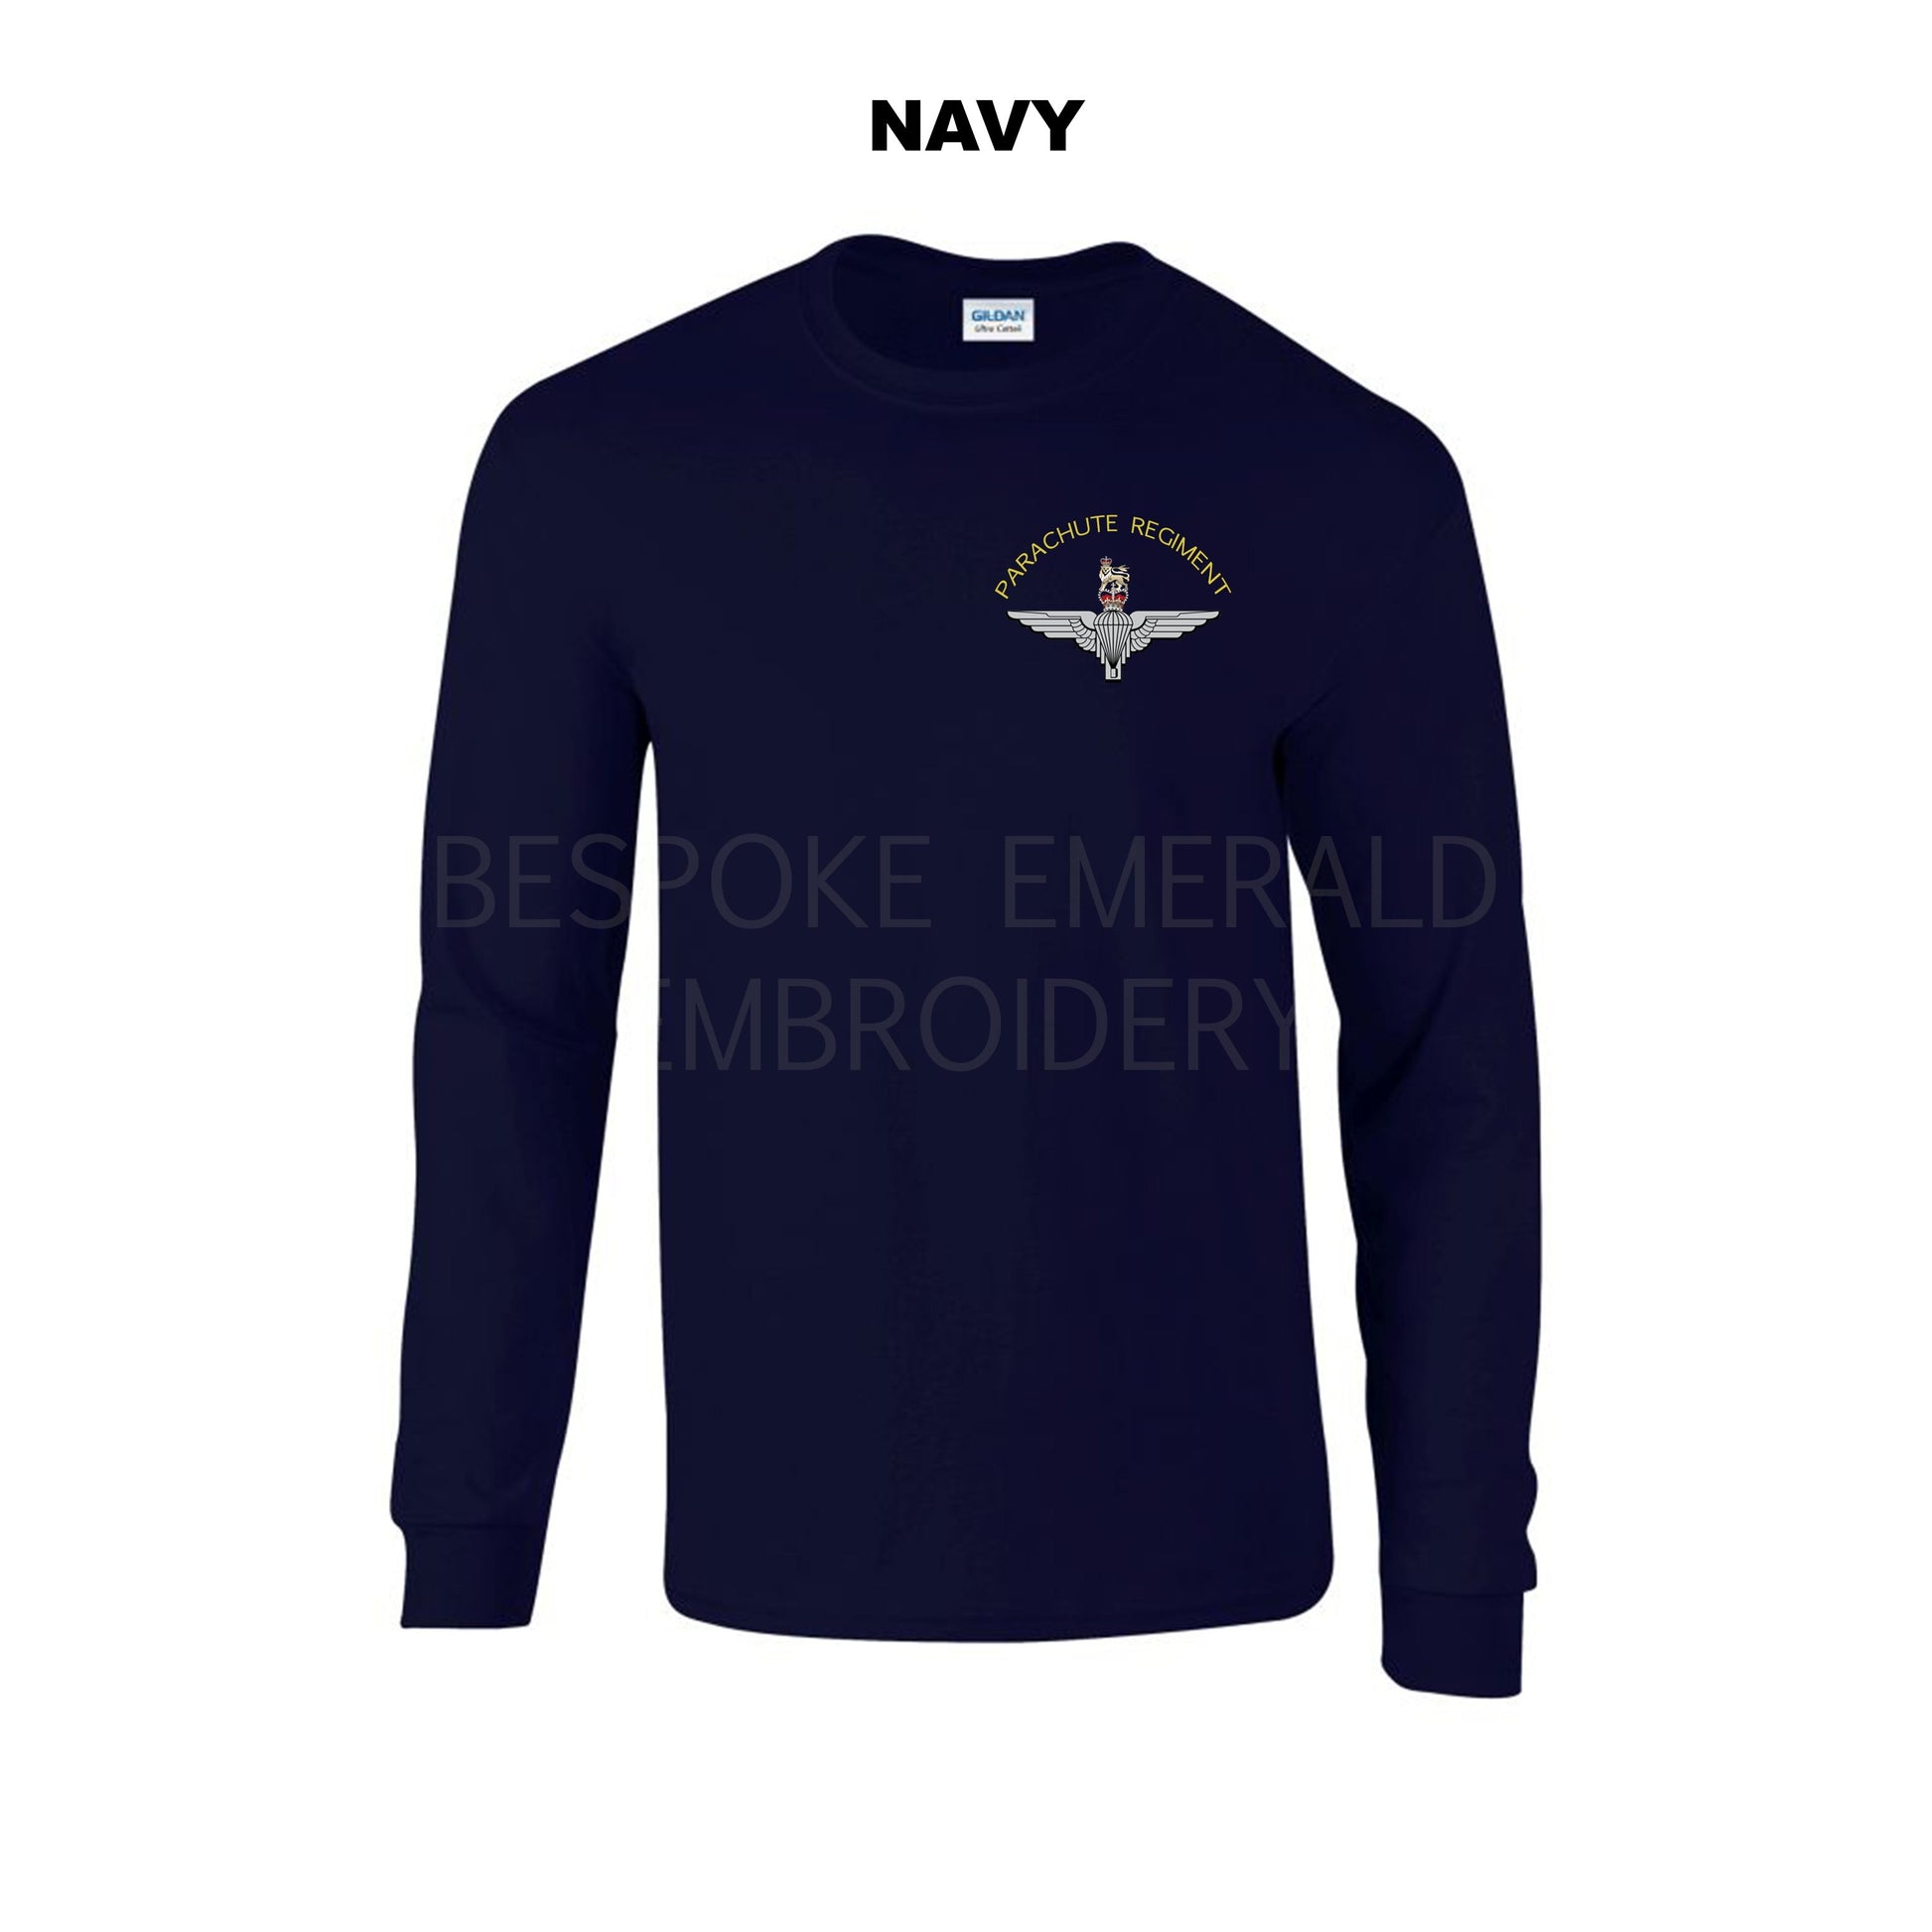 GD14 - Parachute regiment Long sleeve T-shirt - Bespoke Emerald Embroidery Ltd